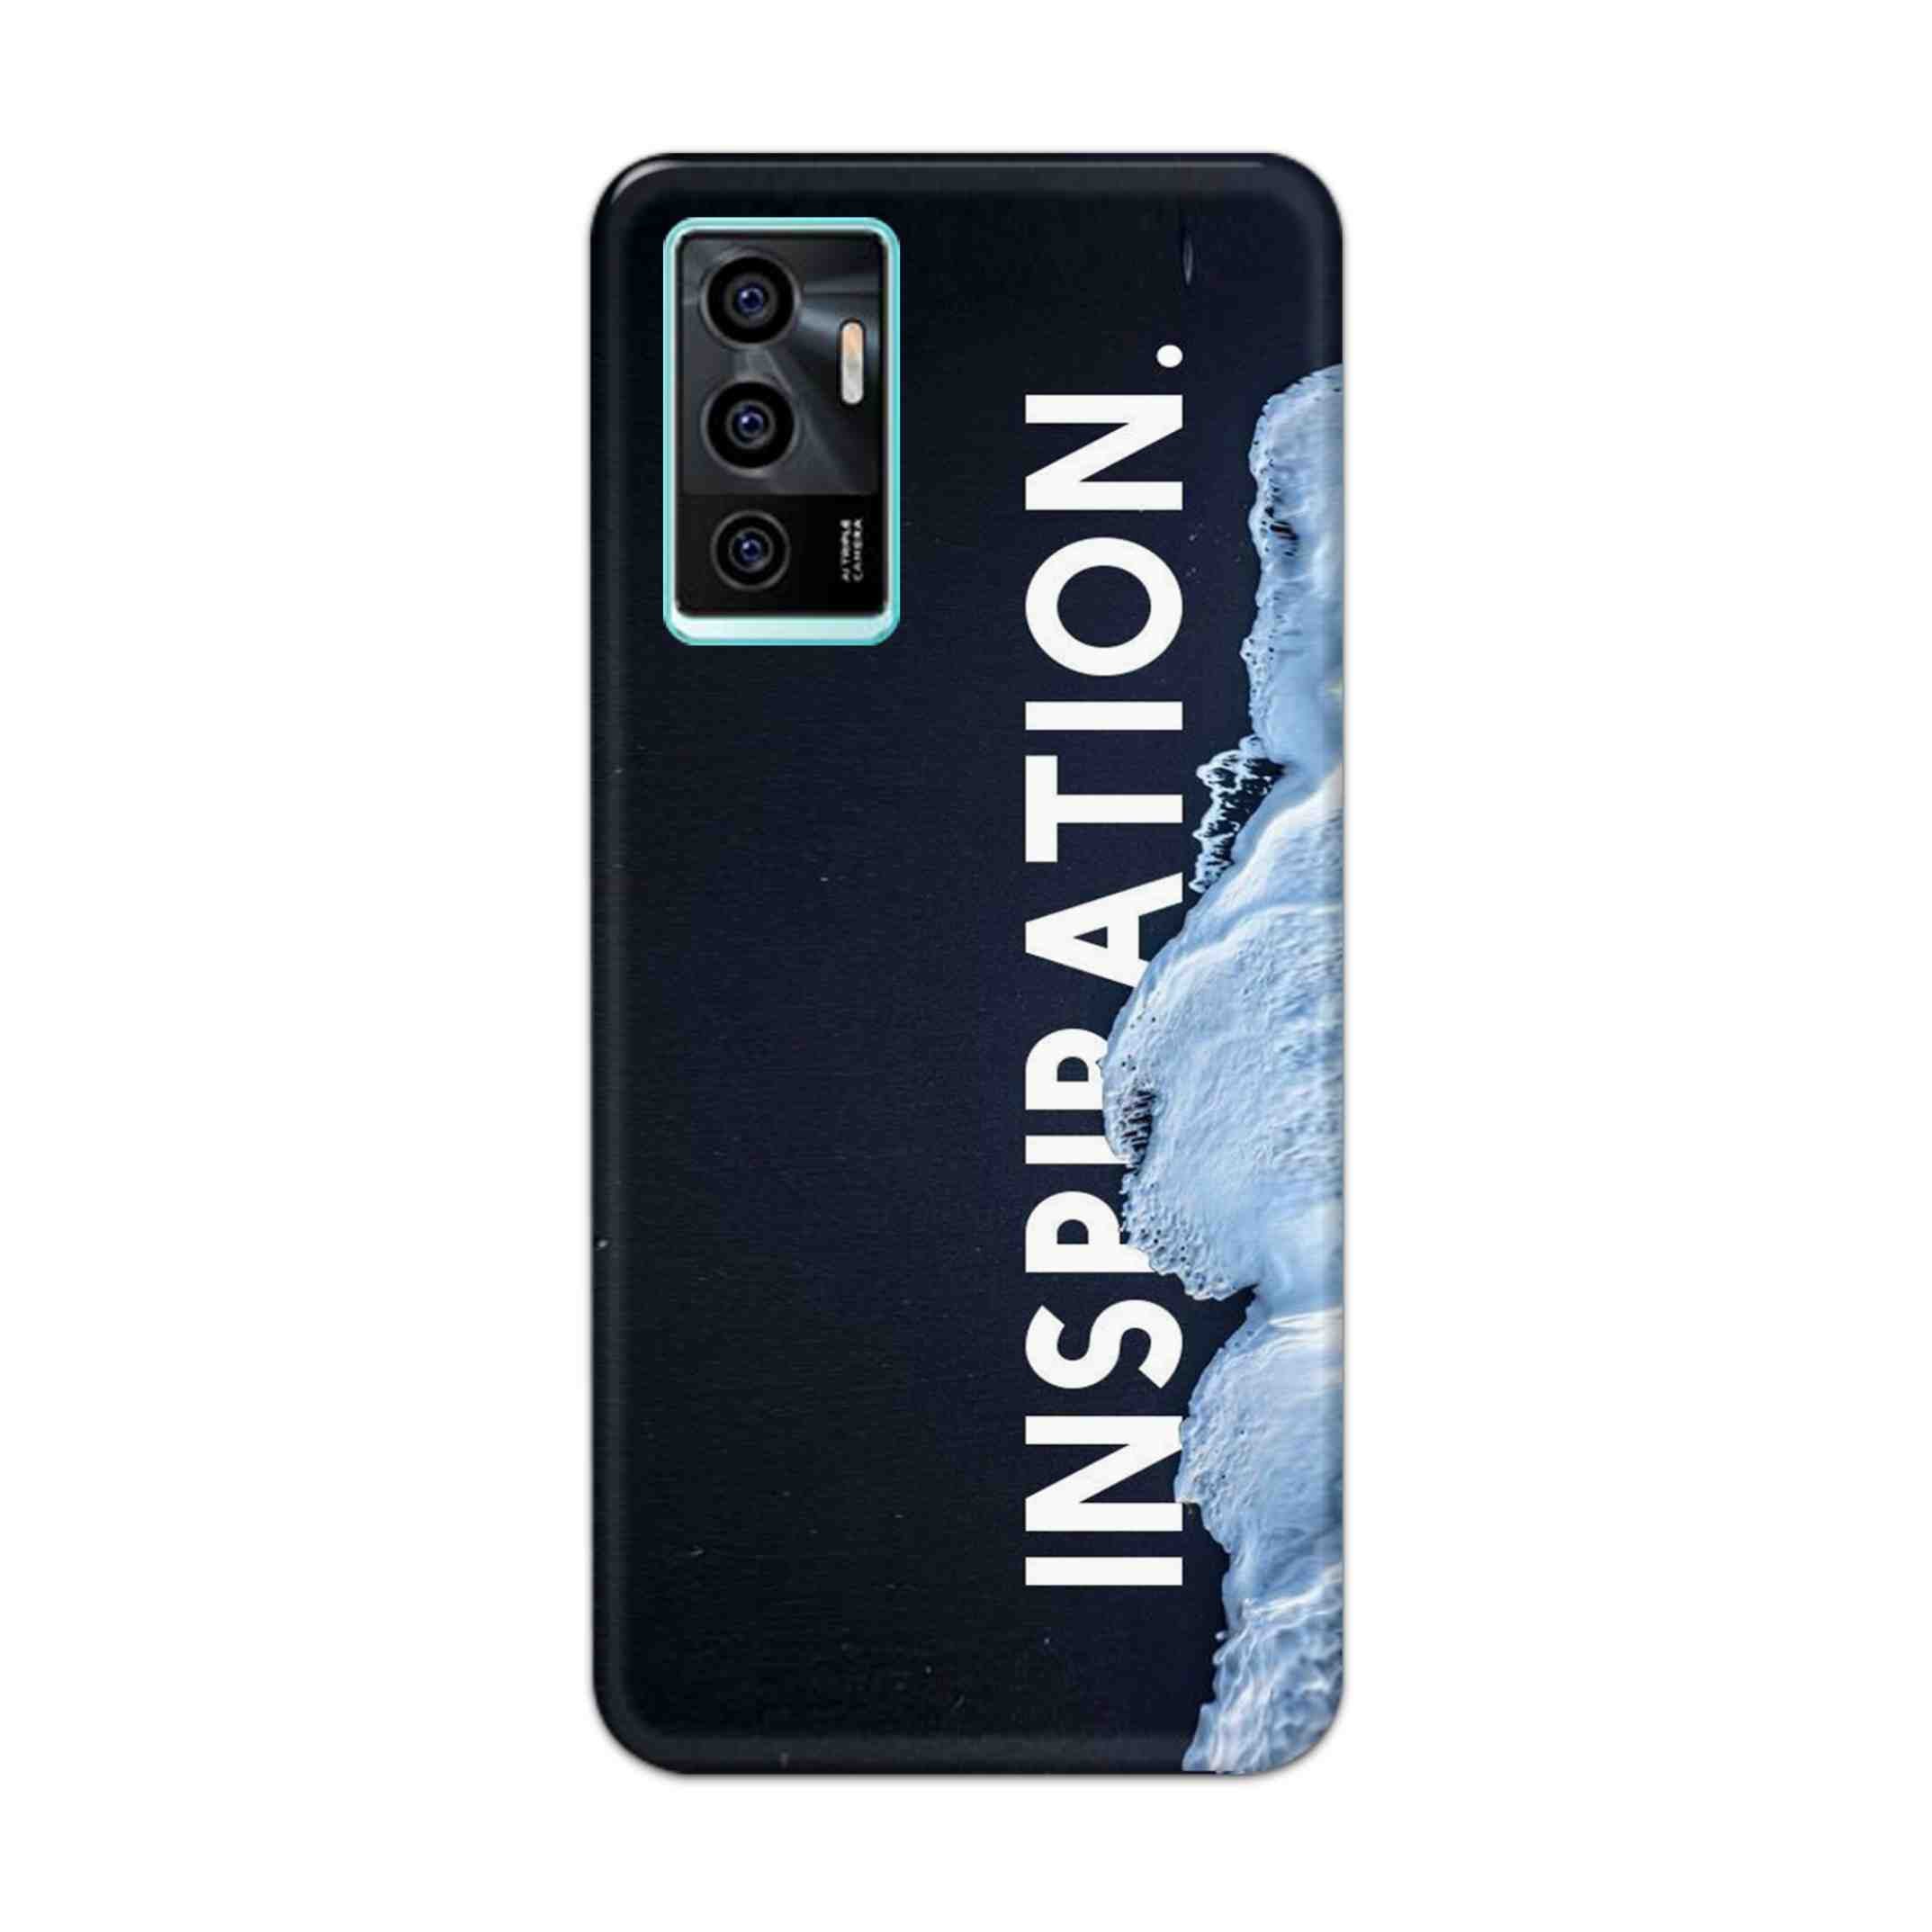 Buy Inspiration Hard Back Mobile Phone Case Cover For Vivo v23e Online